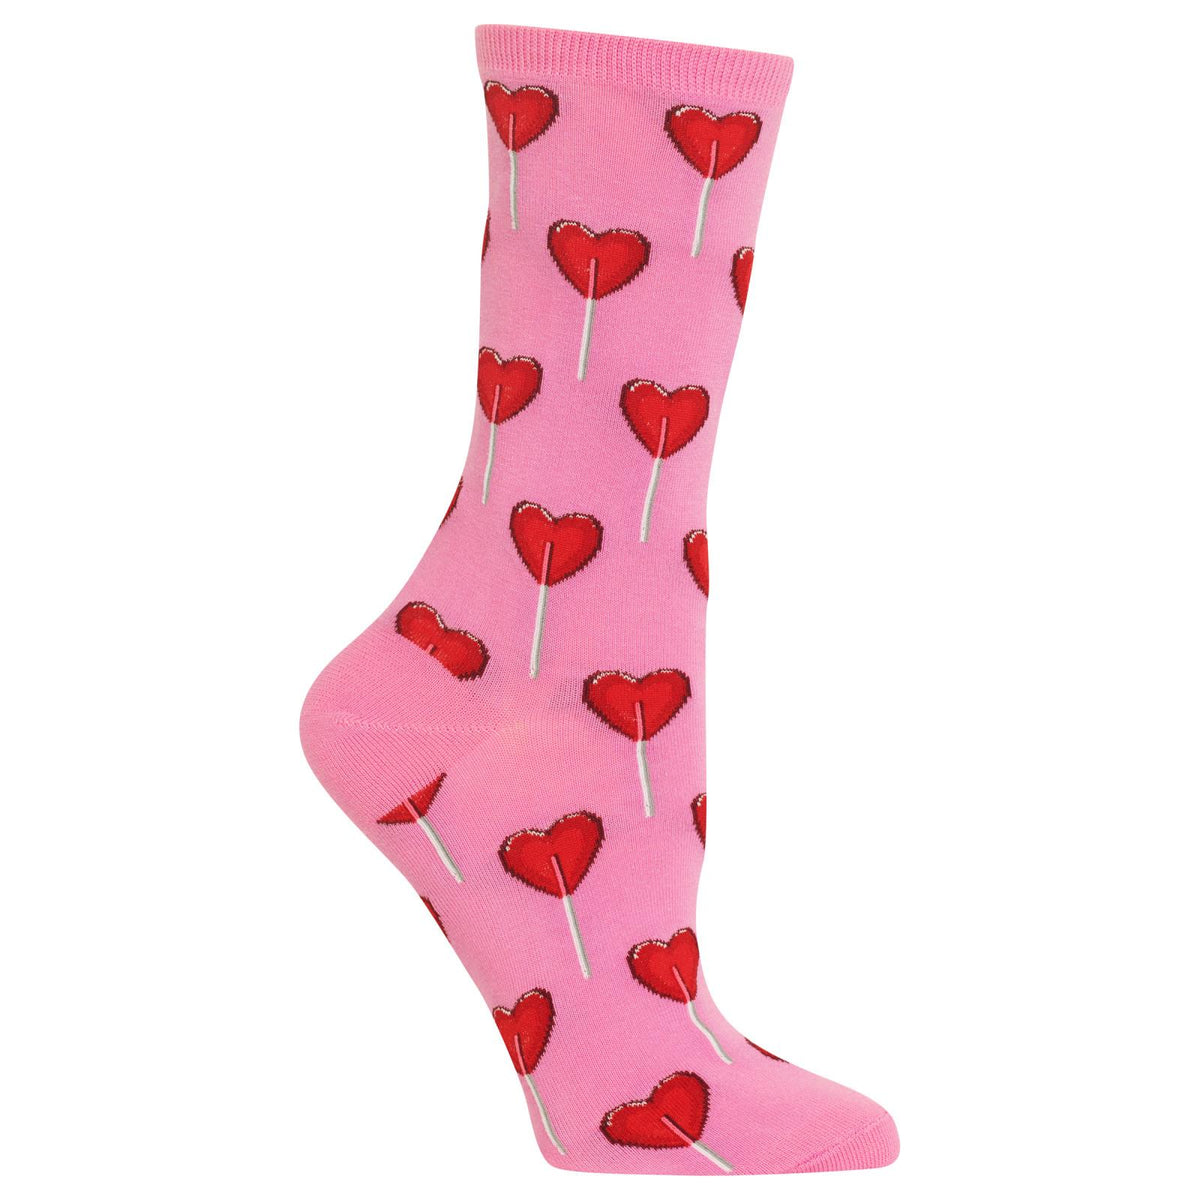 Heart Lollipop Candy Socks (Women’s) – The Sock Barrel